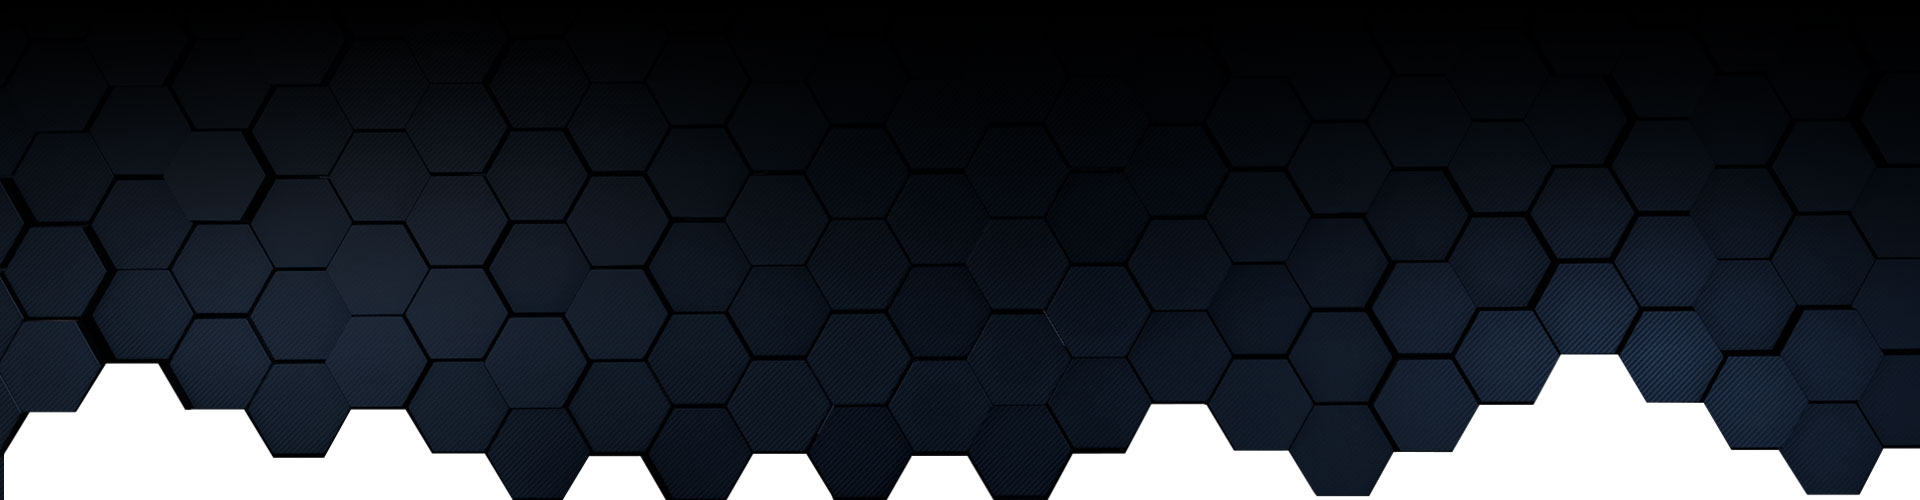 Hexagones noirs à bleus